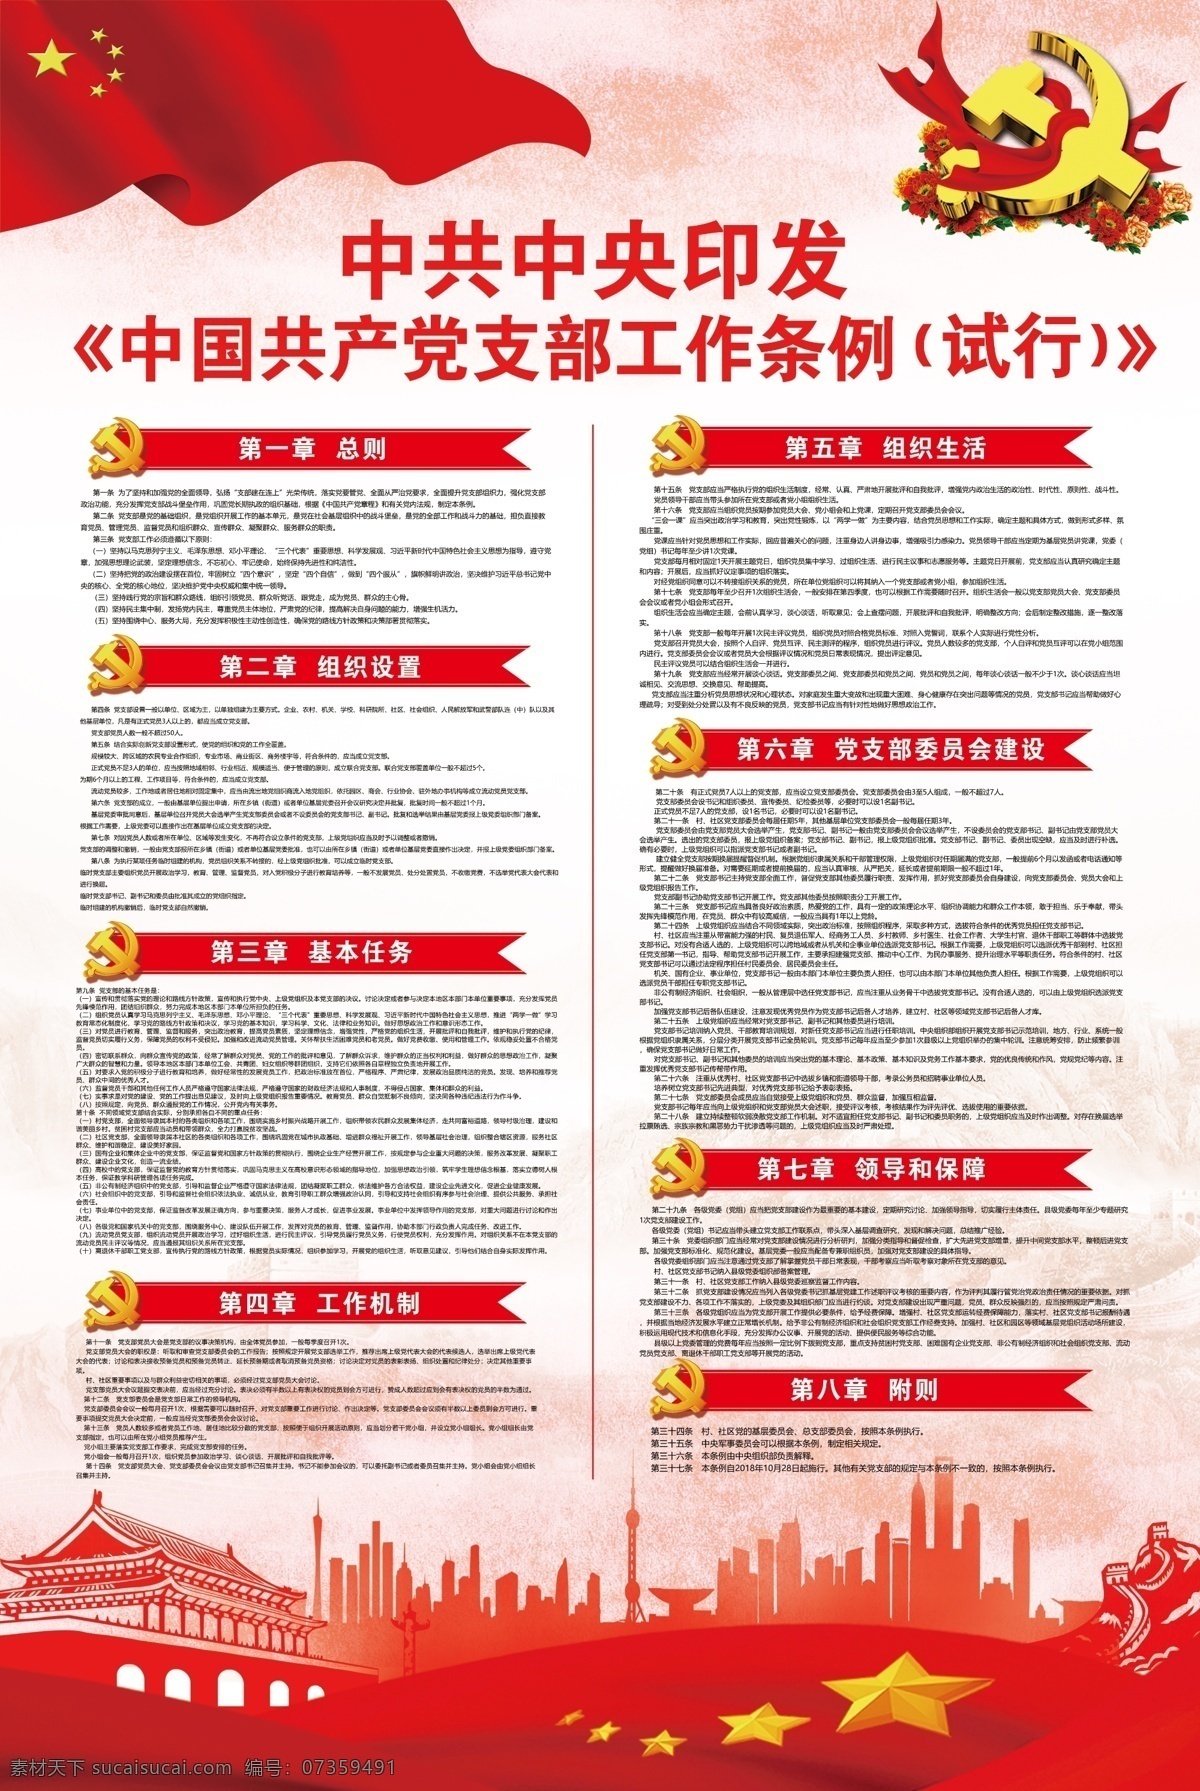 中国共产党 支部工作 条例 支部工作条例 试行 工作条例 工作条例海报 党建 党支部